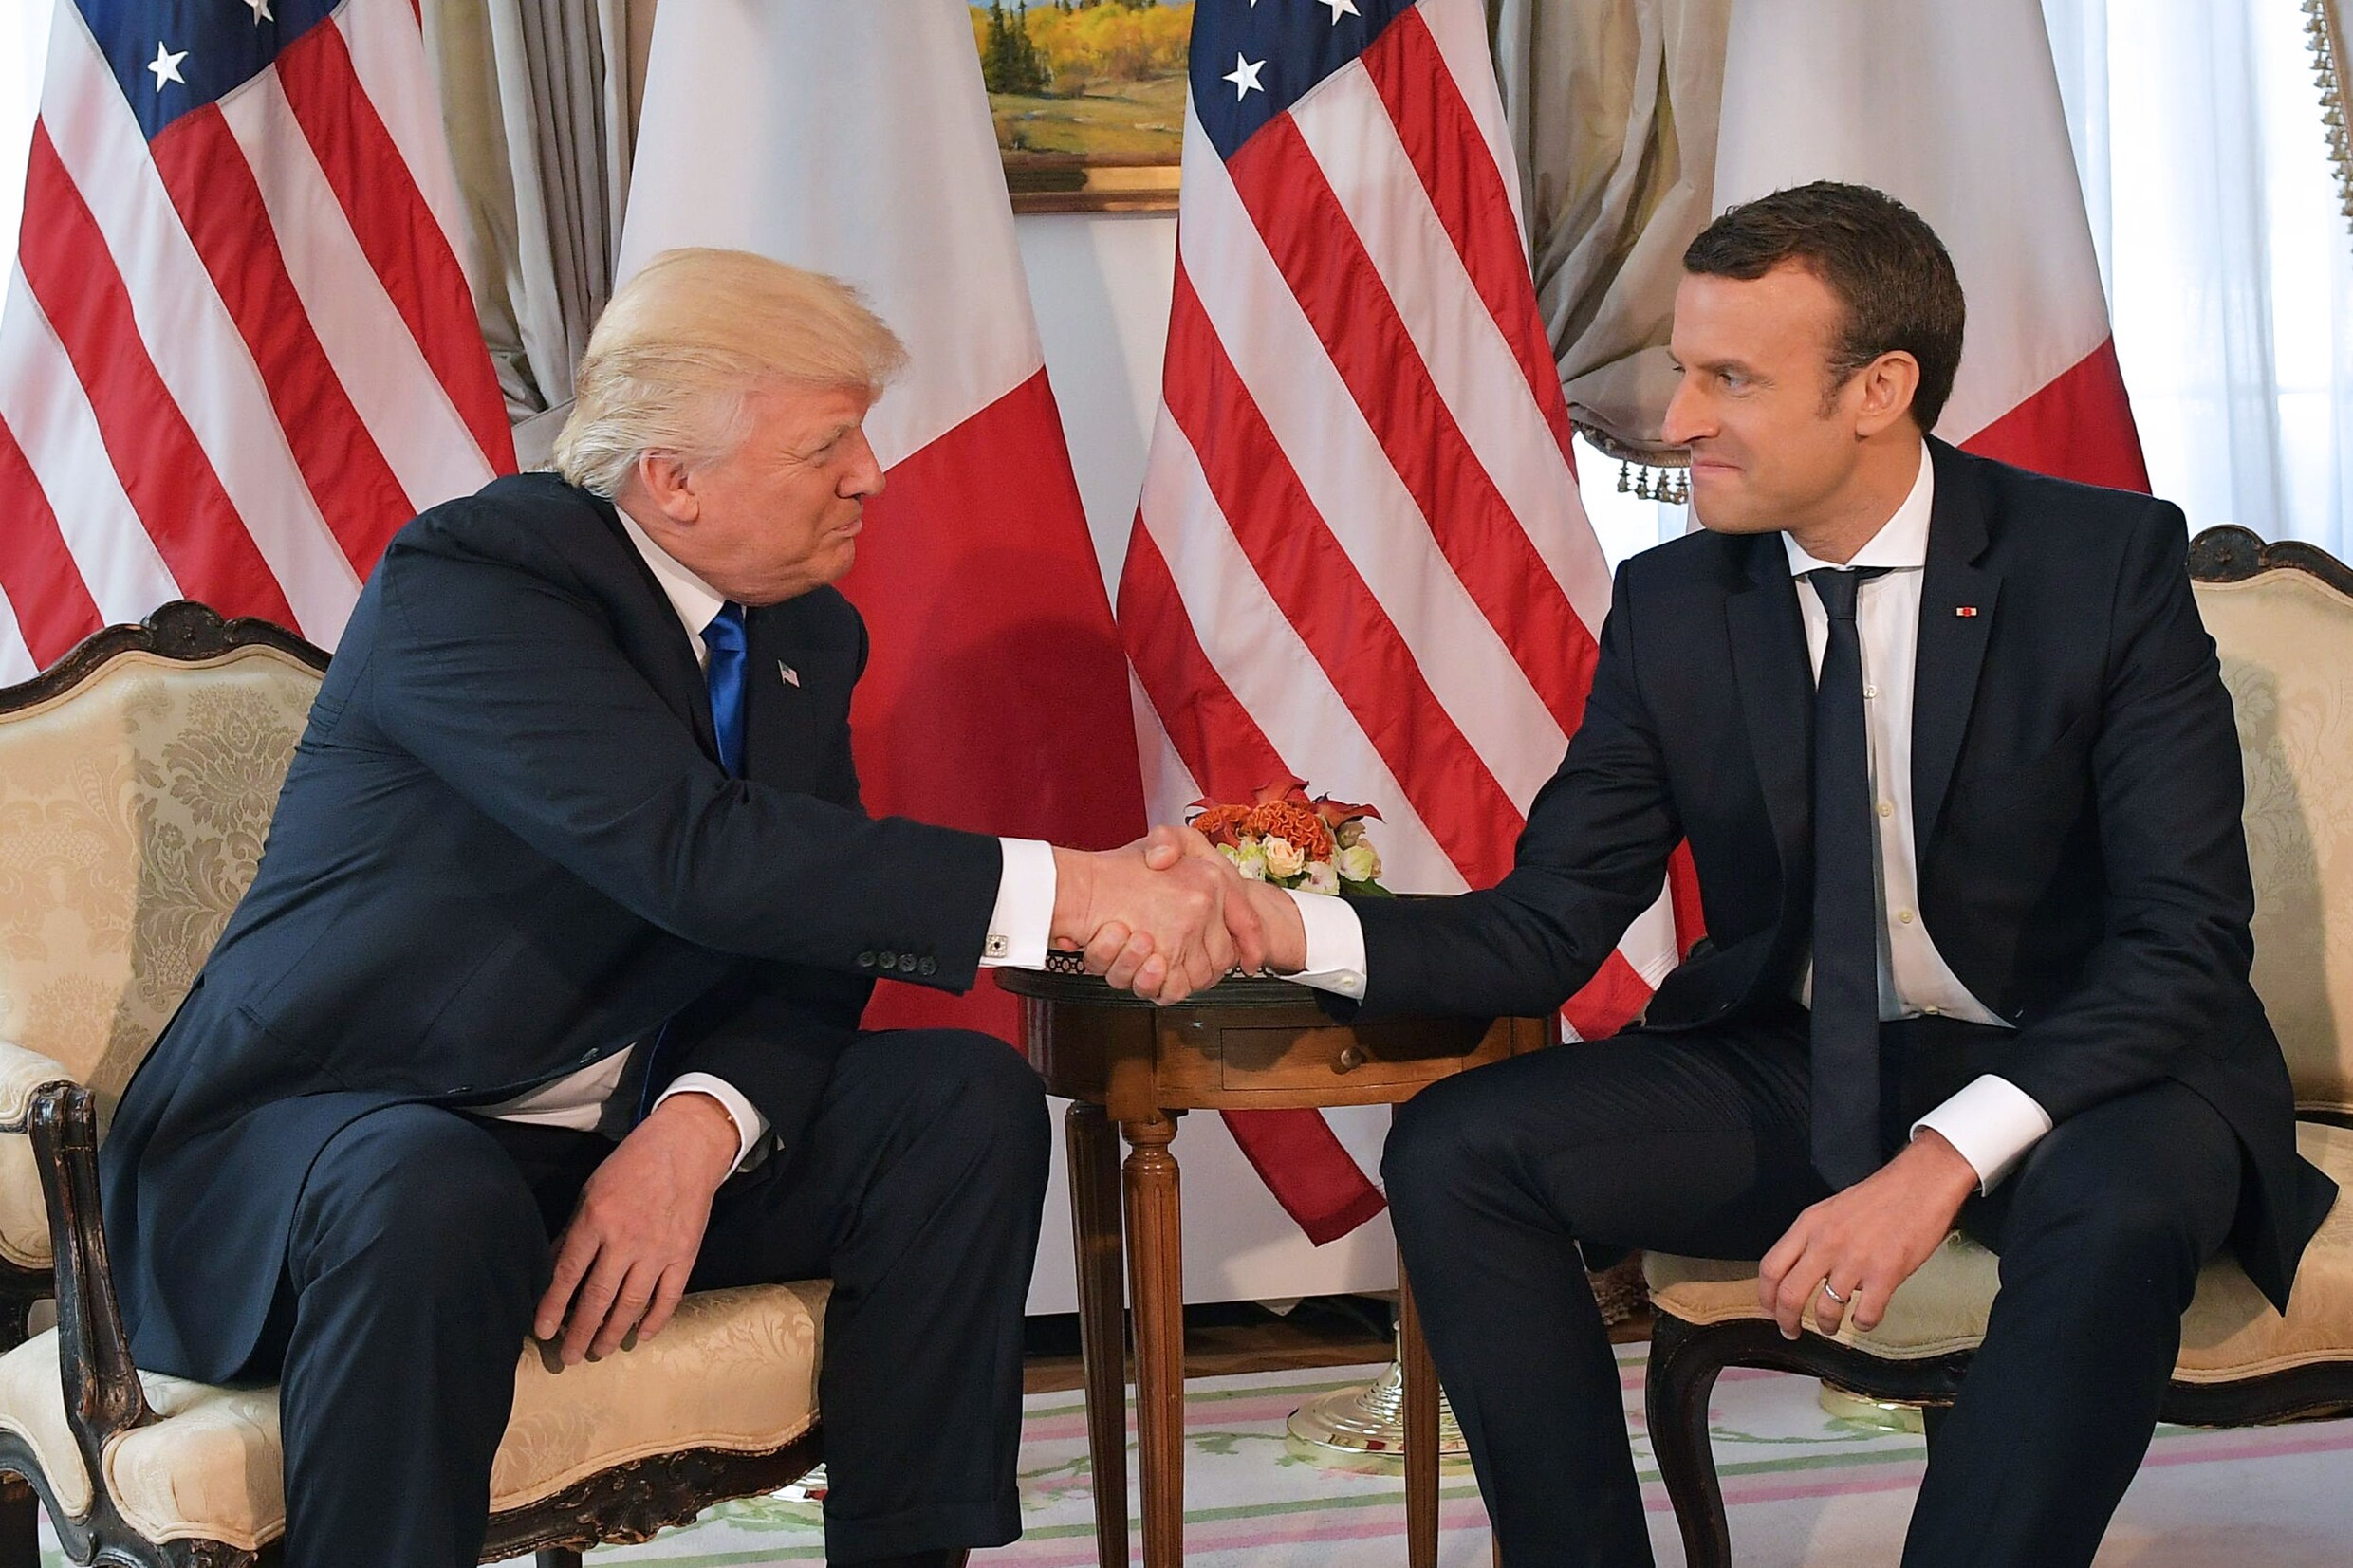 HERLEES: Macron herinnert Trump aan klimaatakkoord